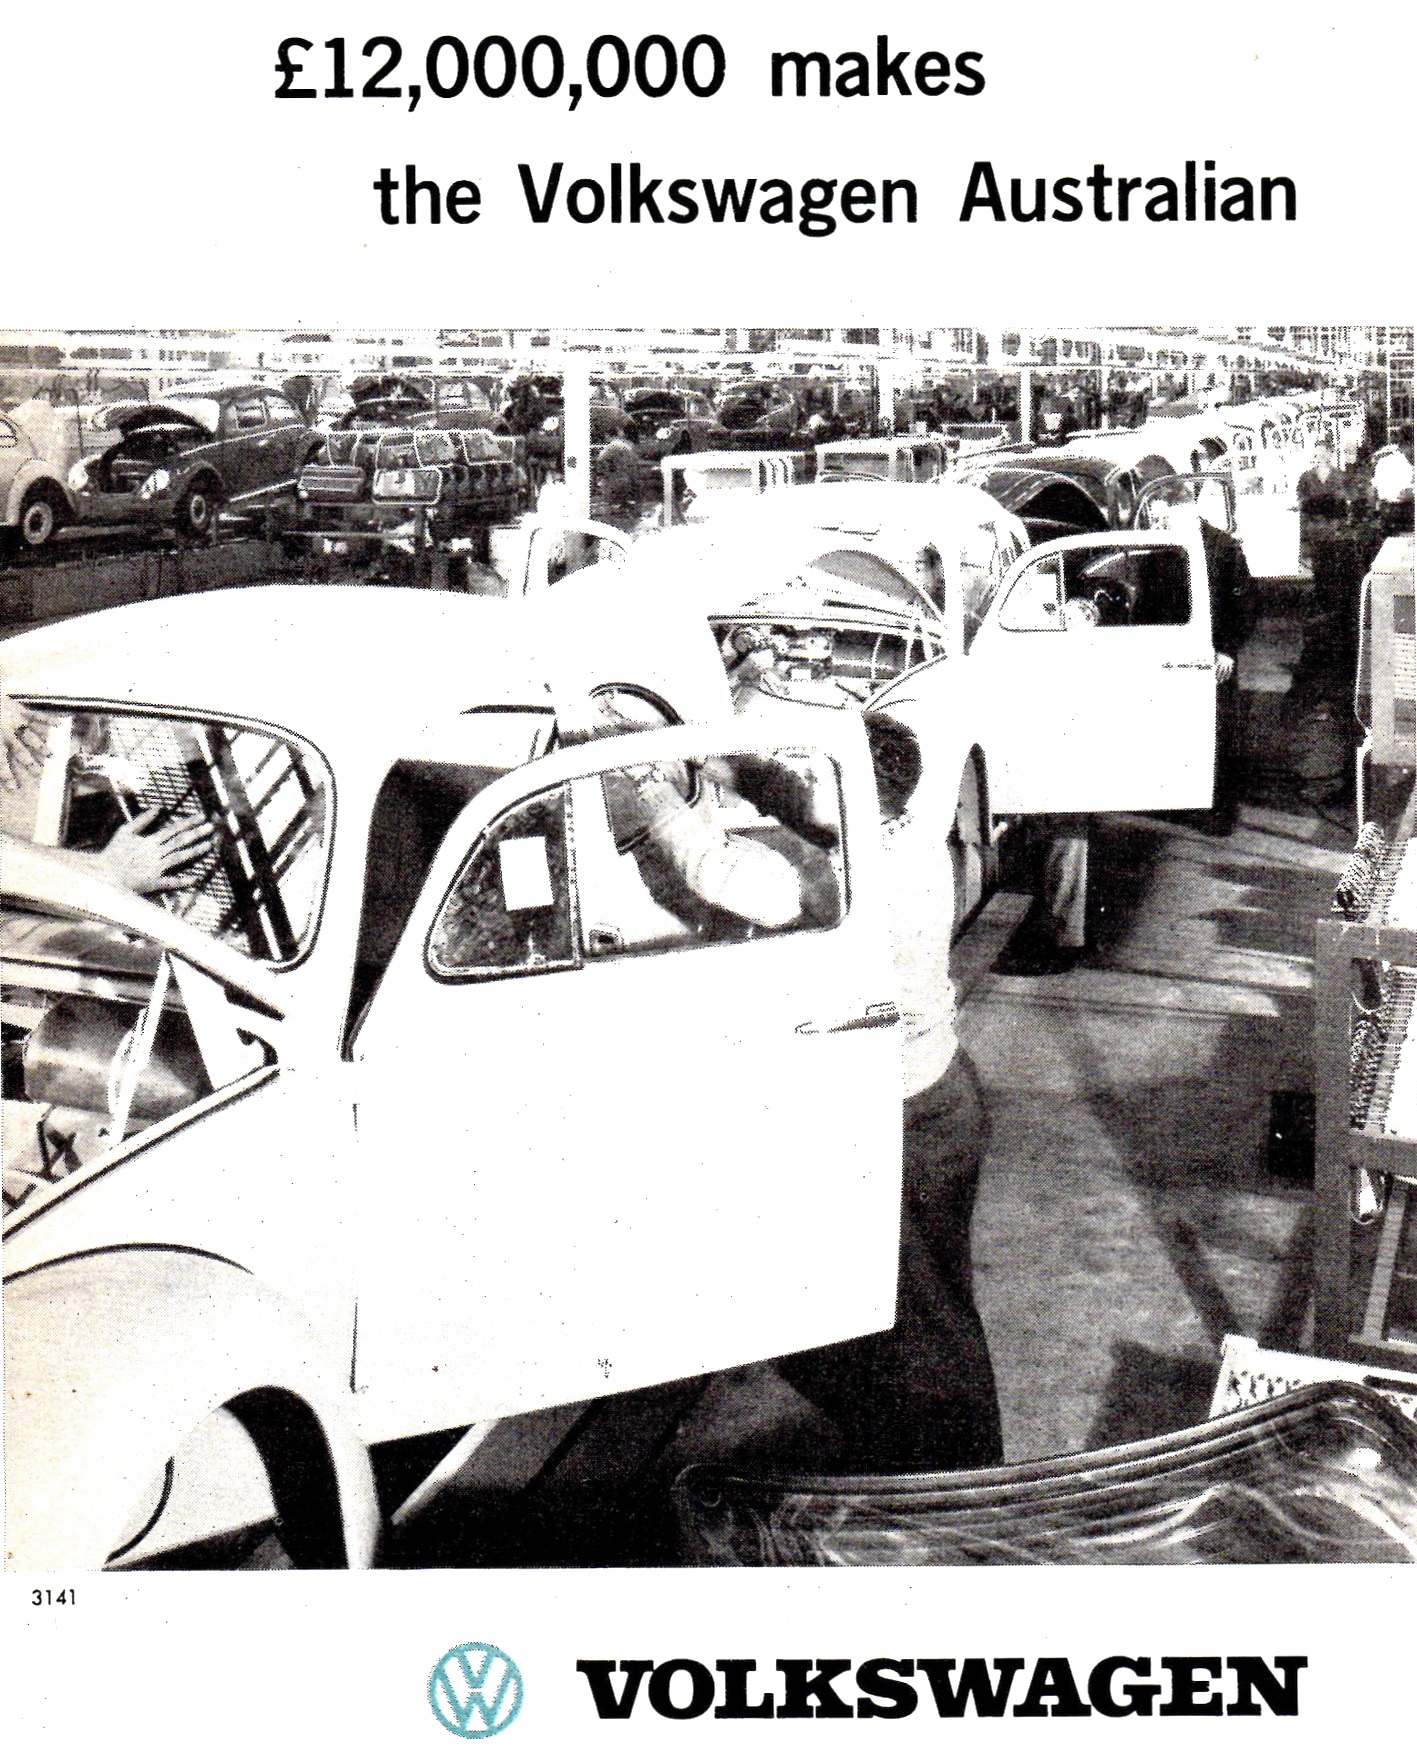 1960 Volkswagen 12,000,000 Pounds Makes The Volkswagen